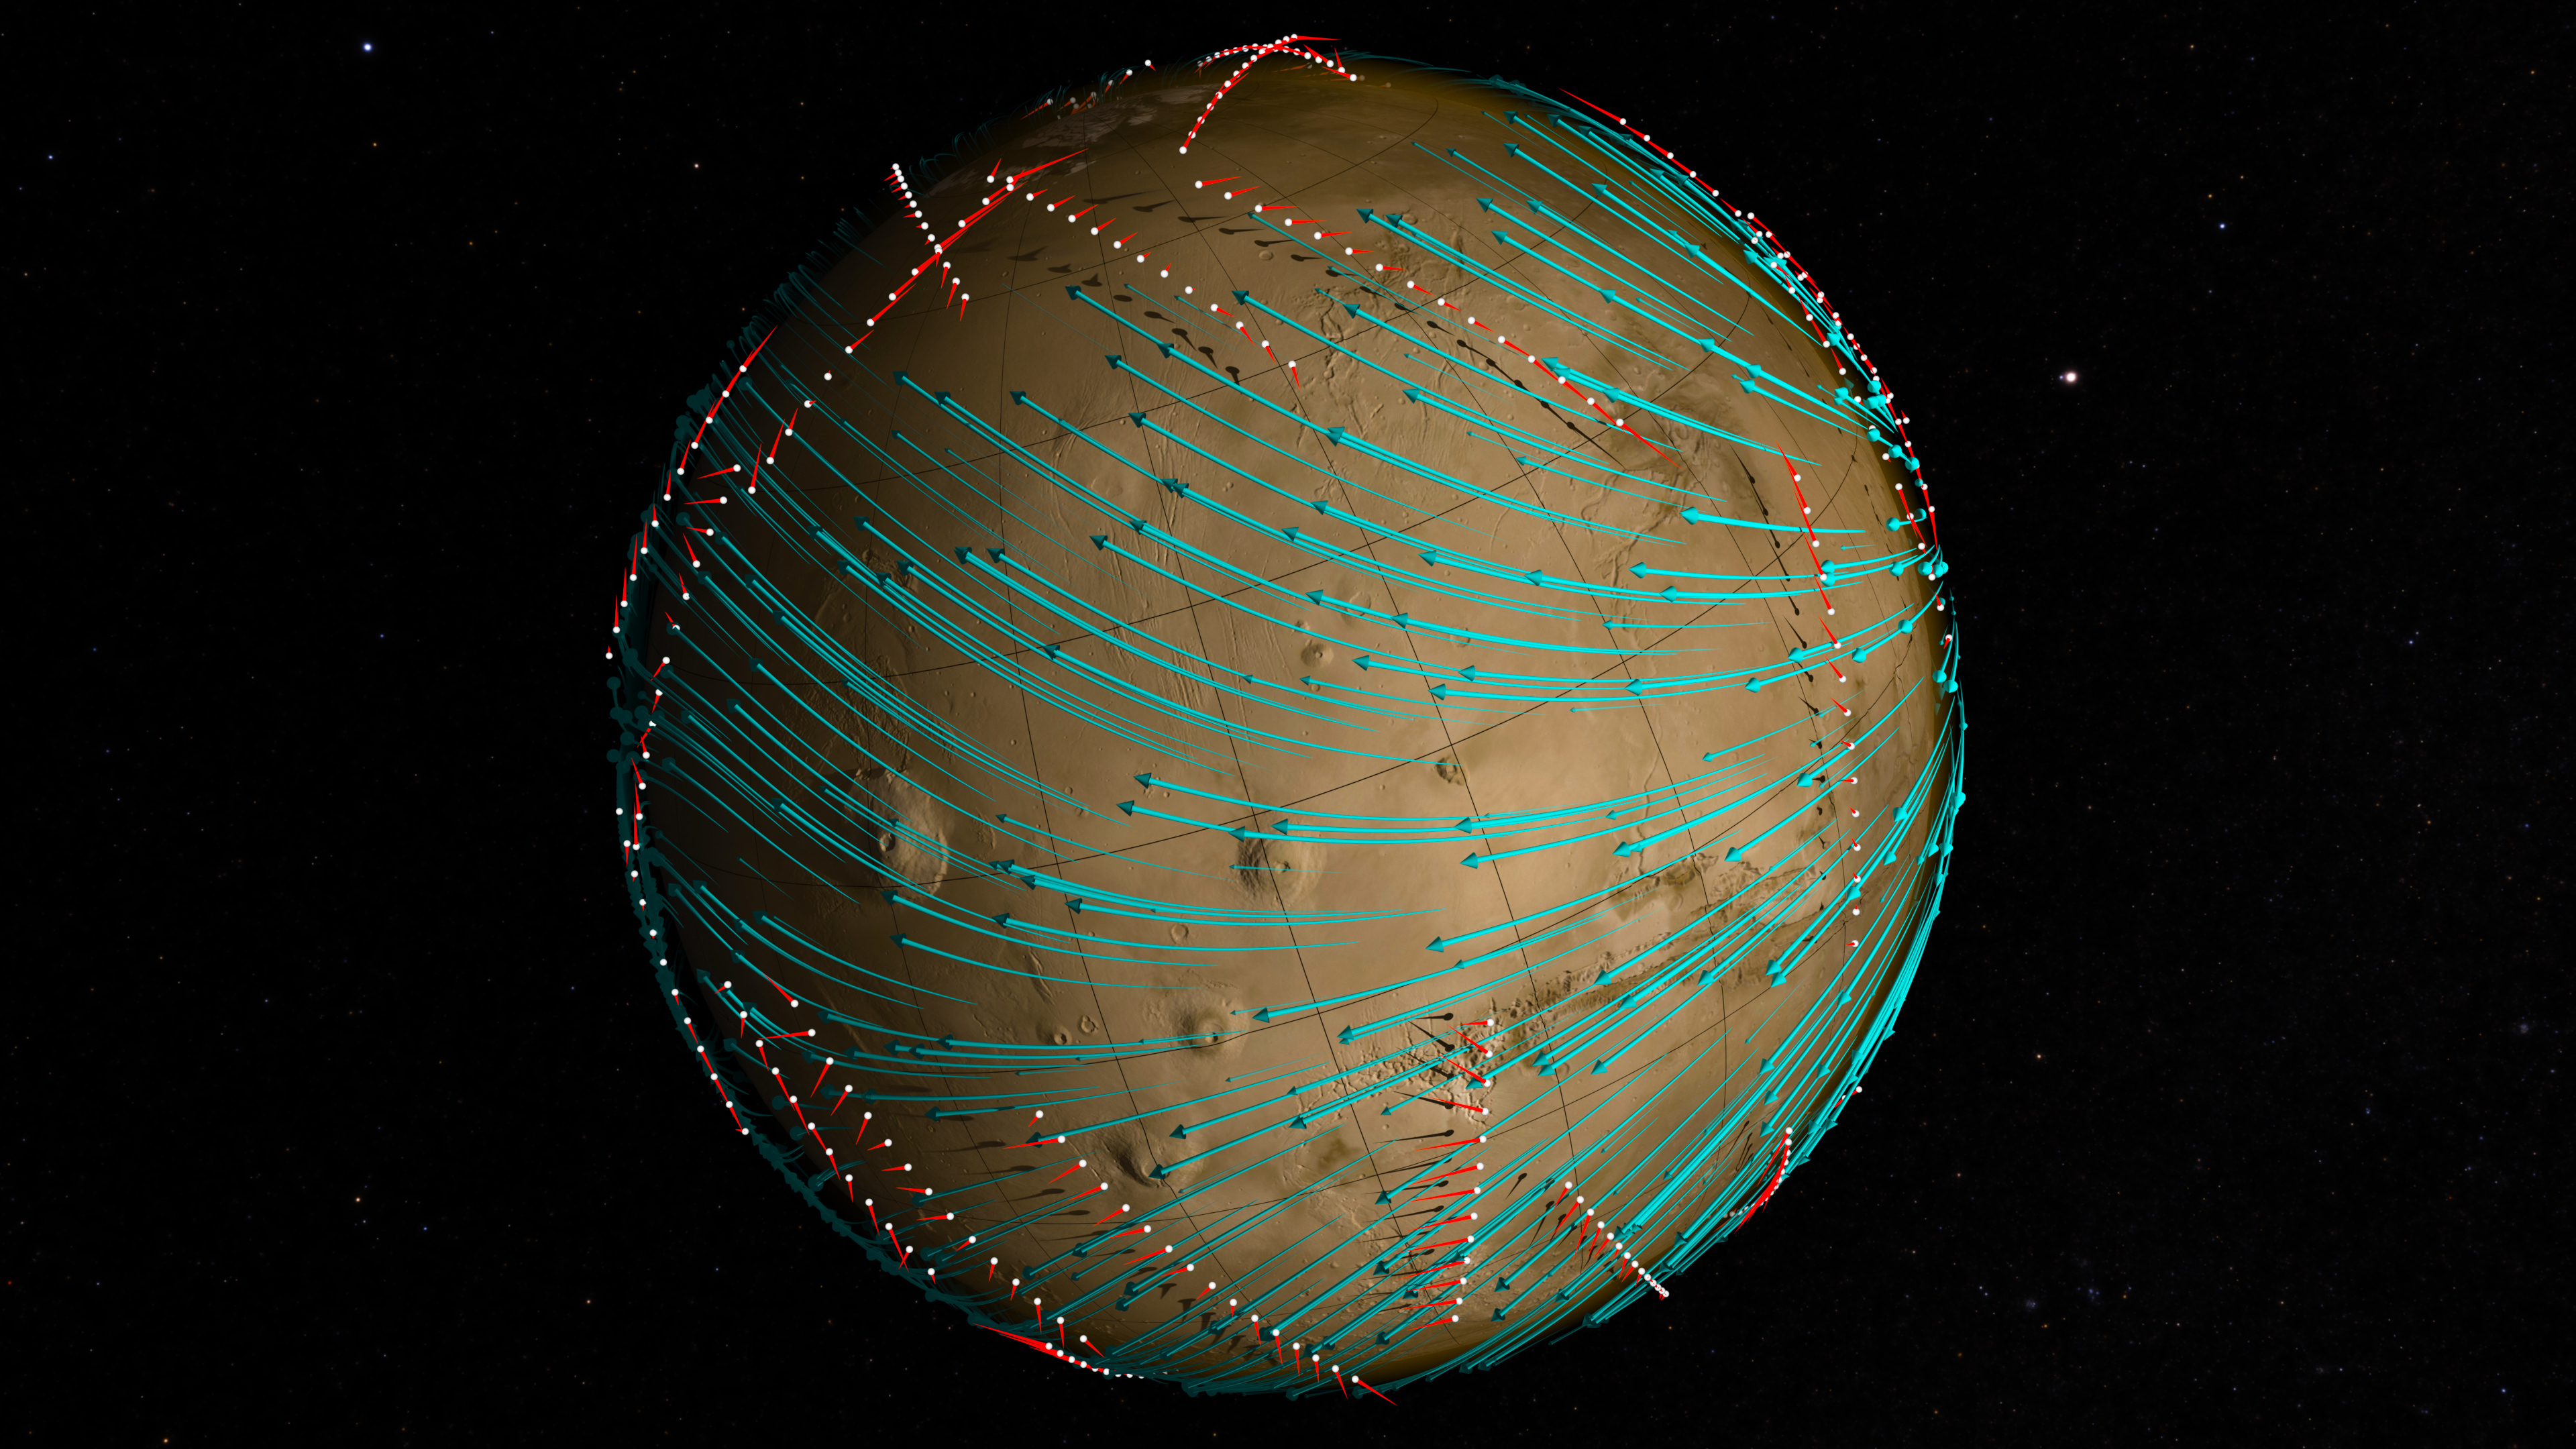 Les points blancs le long de Mars représentent le chemin emprunté par Maven. Les flèches bleues indiquent la direction des vents dans la haute atmosphère martienne. Les lignes rouges représentent la vitesse et la direction locale du vent lors des mesures prisent par Maven. © Nasa Goddard, Maven, SVS, Greg Shirah